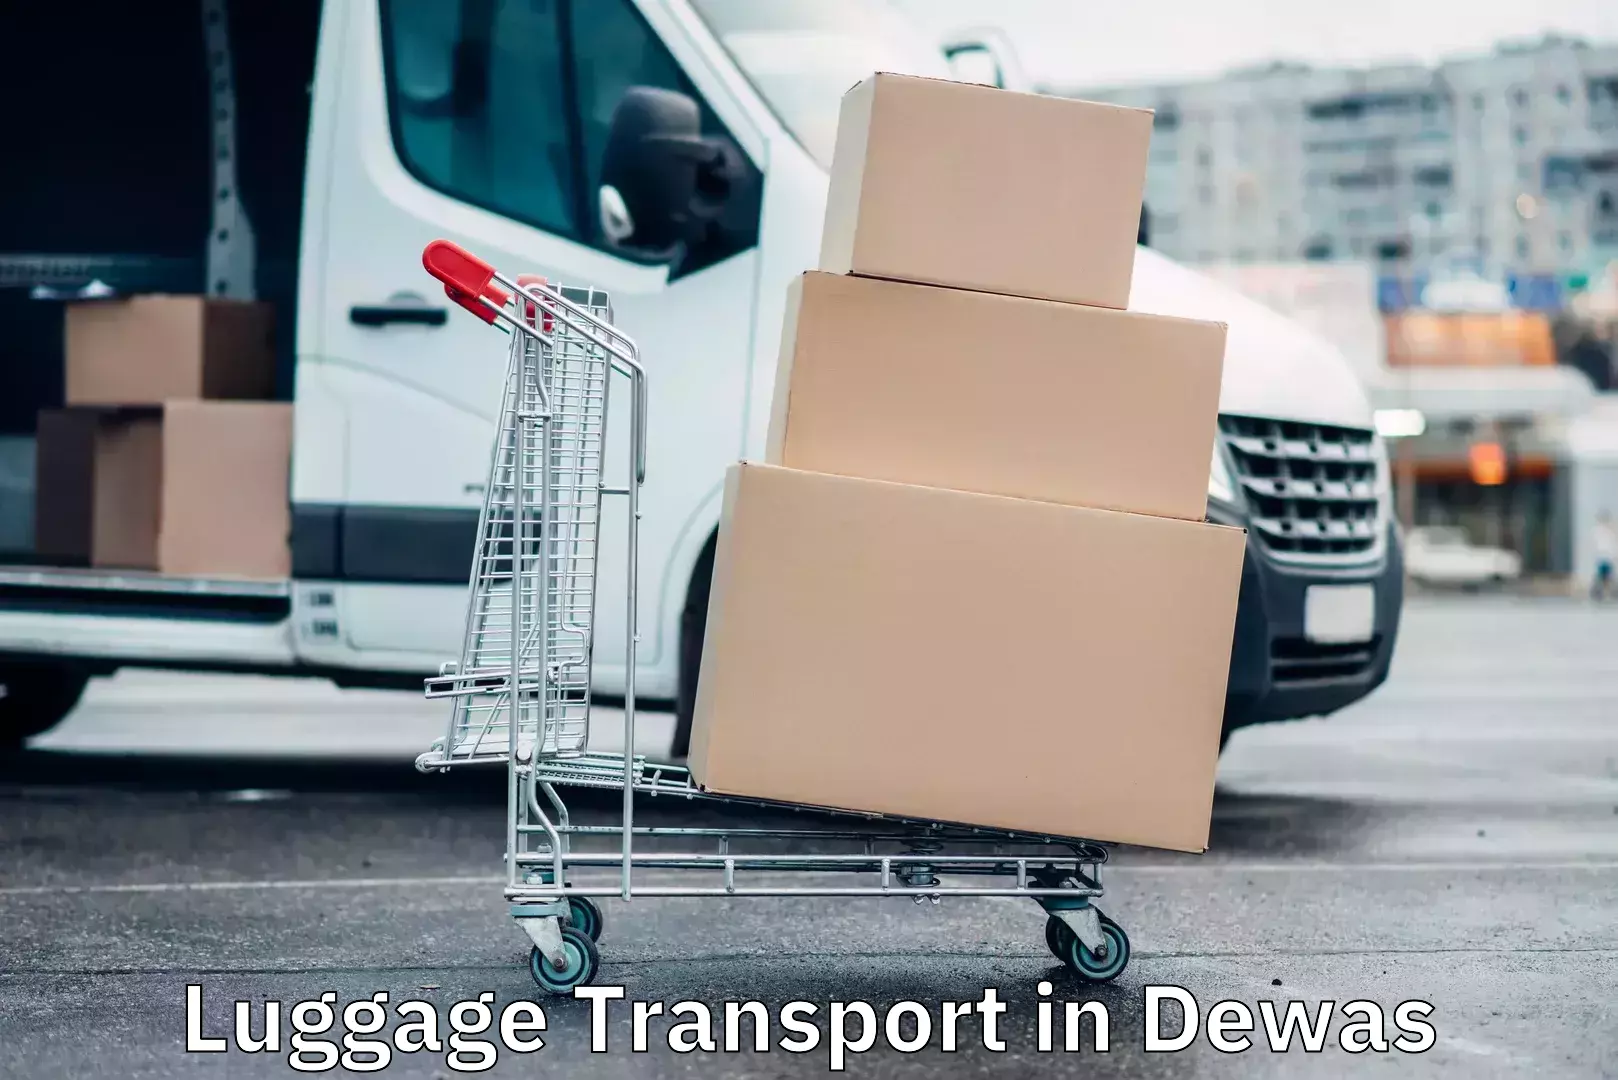 Holiday season luggage delivery in Dewas